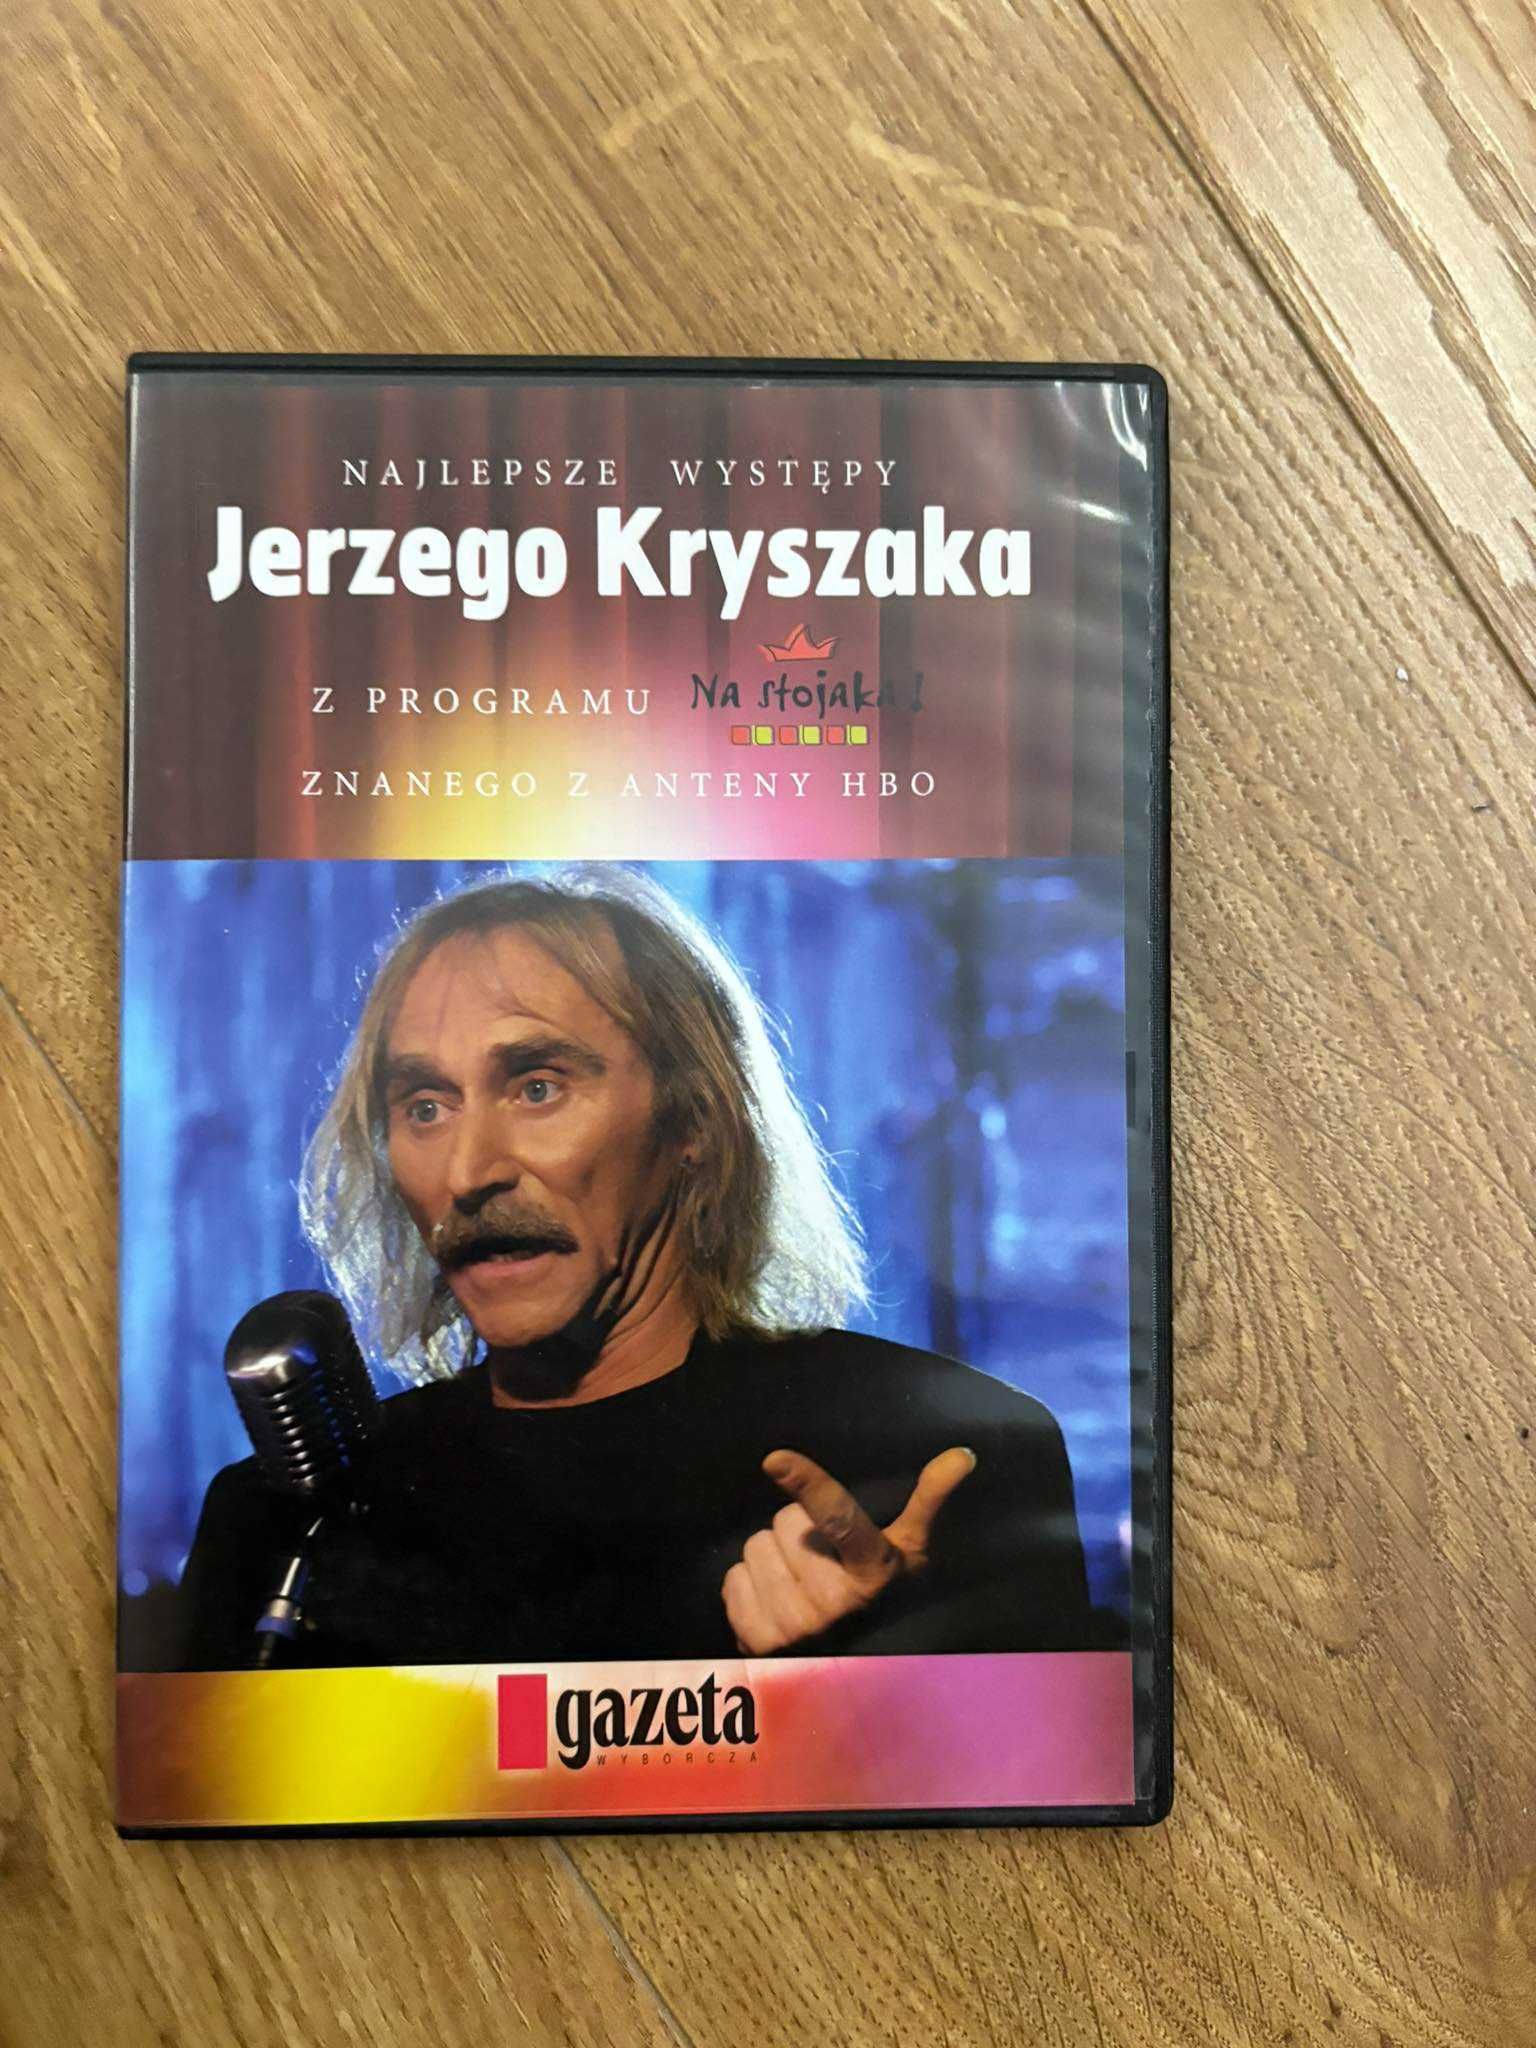 DVD najlepsze występy Jerzego Kruszarka z programu na stojaka hbo